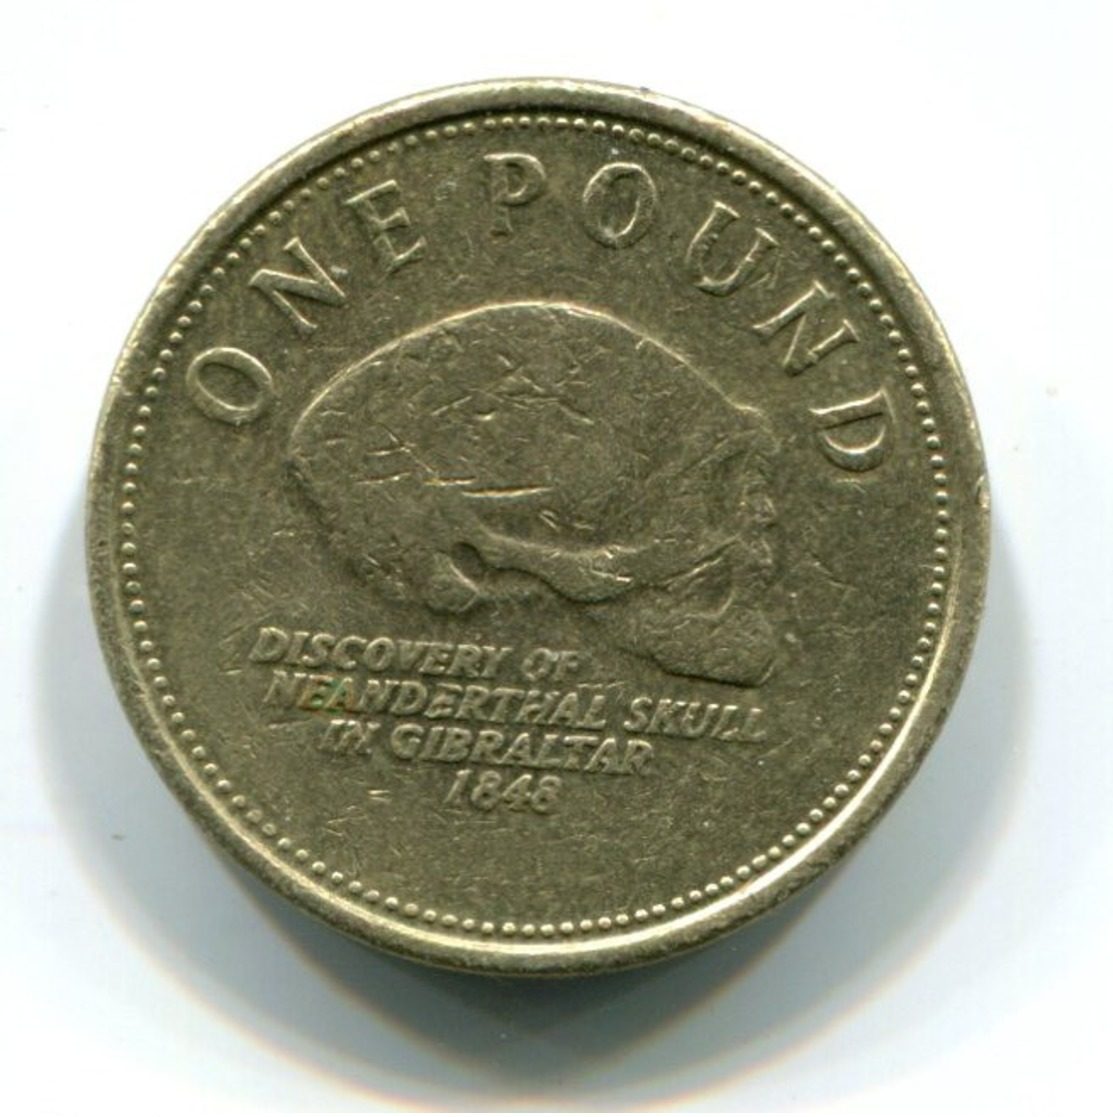 2009 Gibraltar 'Neanderthal Skull' One Pound Coin - Gibraltar